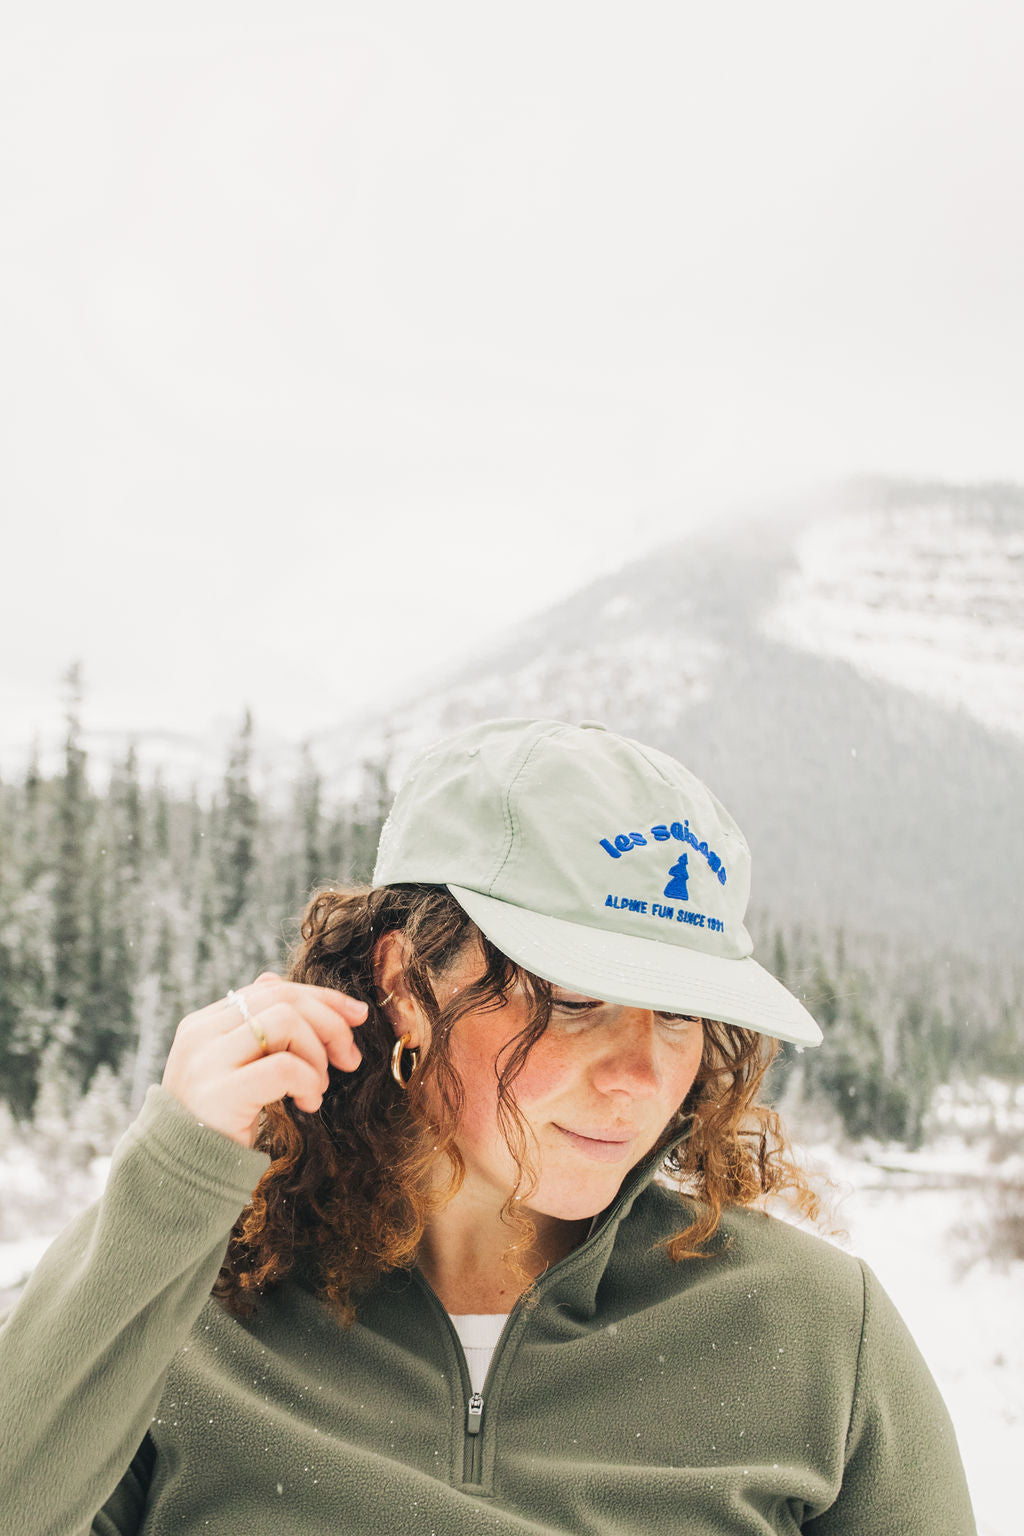 Alpine Fun cap, sage cap great for running, skiing, retro look.